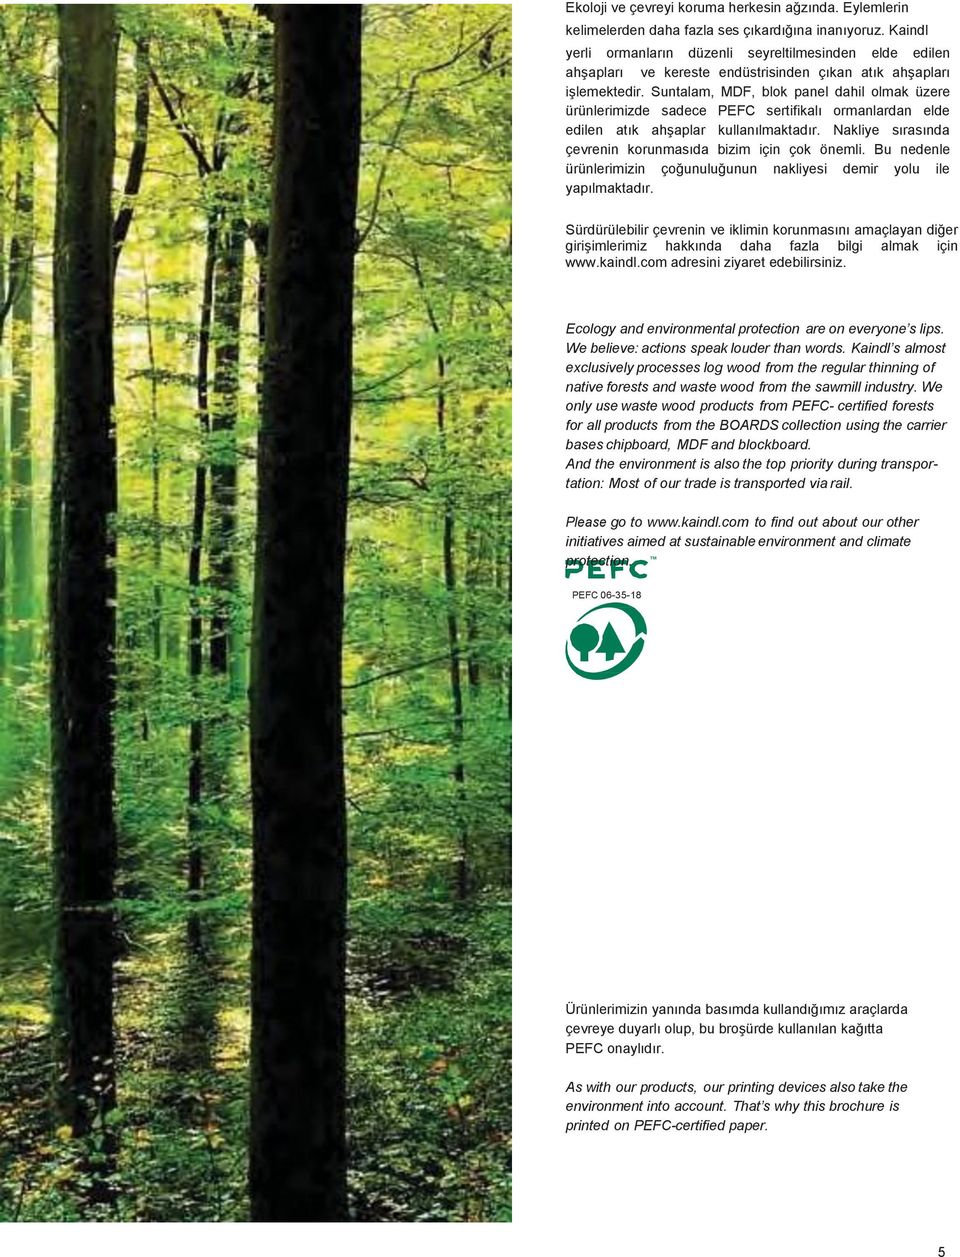 Suntalam, MDF, blok panel dahil olmak üzere ürünlerimizde sadece PEFC sertifikalı ormanlardan elde edilen atık ahşaplar kullanılmaktadır. Nakliye sırasında çevrenin korunmasıda bizim için çok önemli.